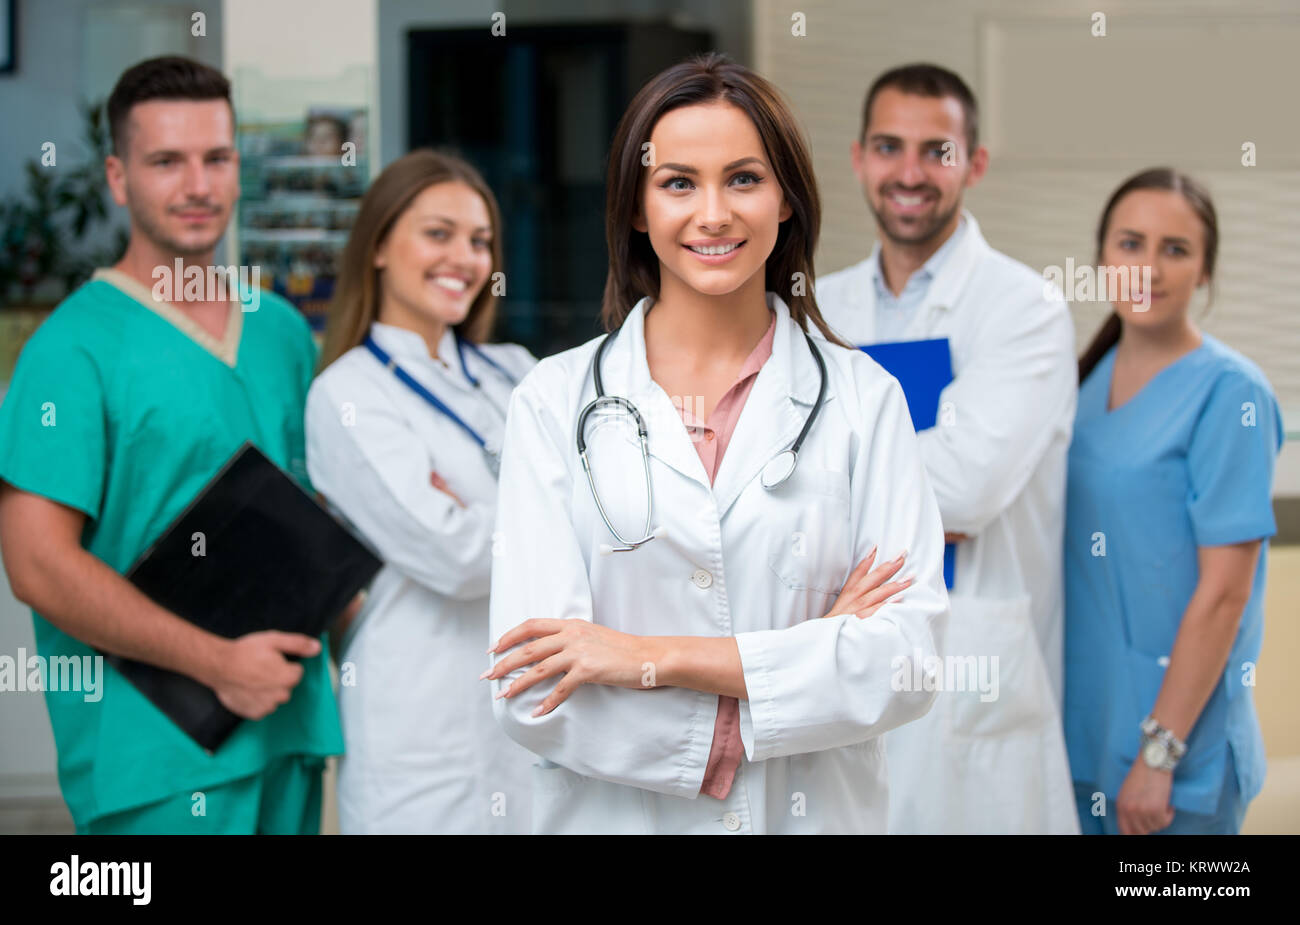 Klinik, Beruf, Menschen, Gesundheitswesen und Medizin Konzept - glückliche Gruppe der Ärzte oder Ärzte im Krankenhaus Flur Stockfoto